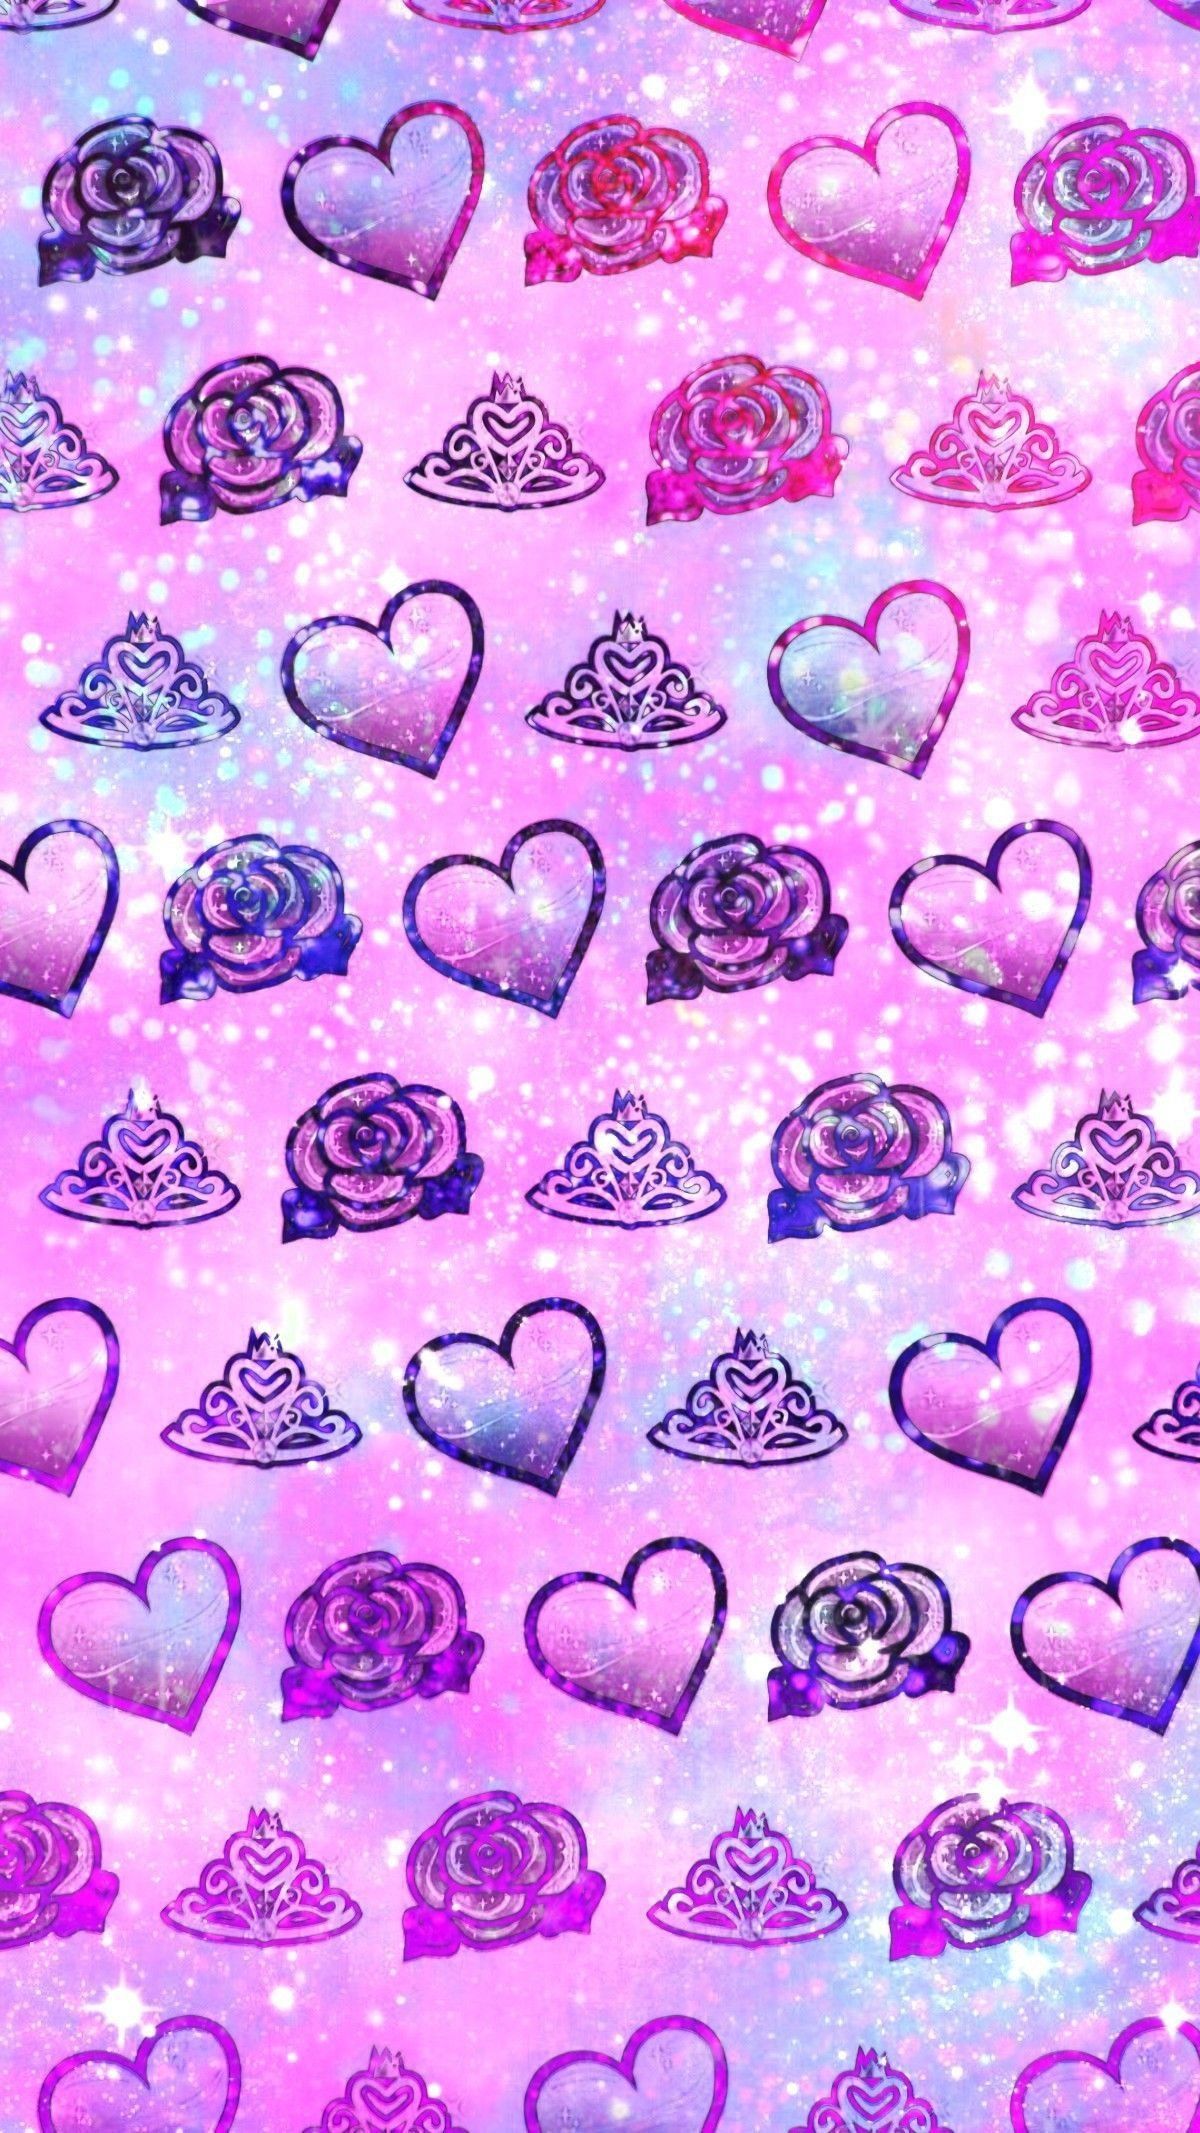 Cute Emojis Wallpapers - Wallpaper Cave